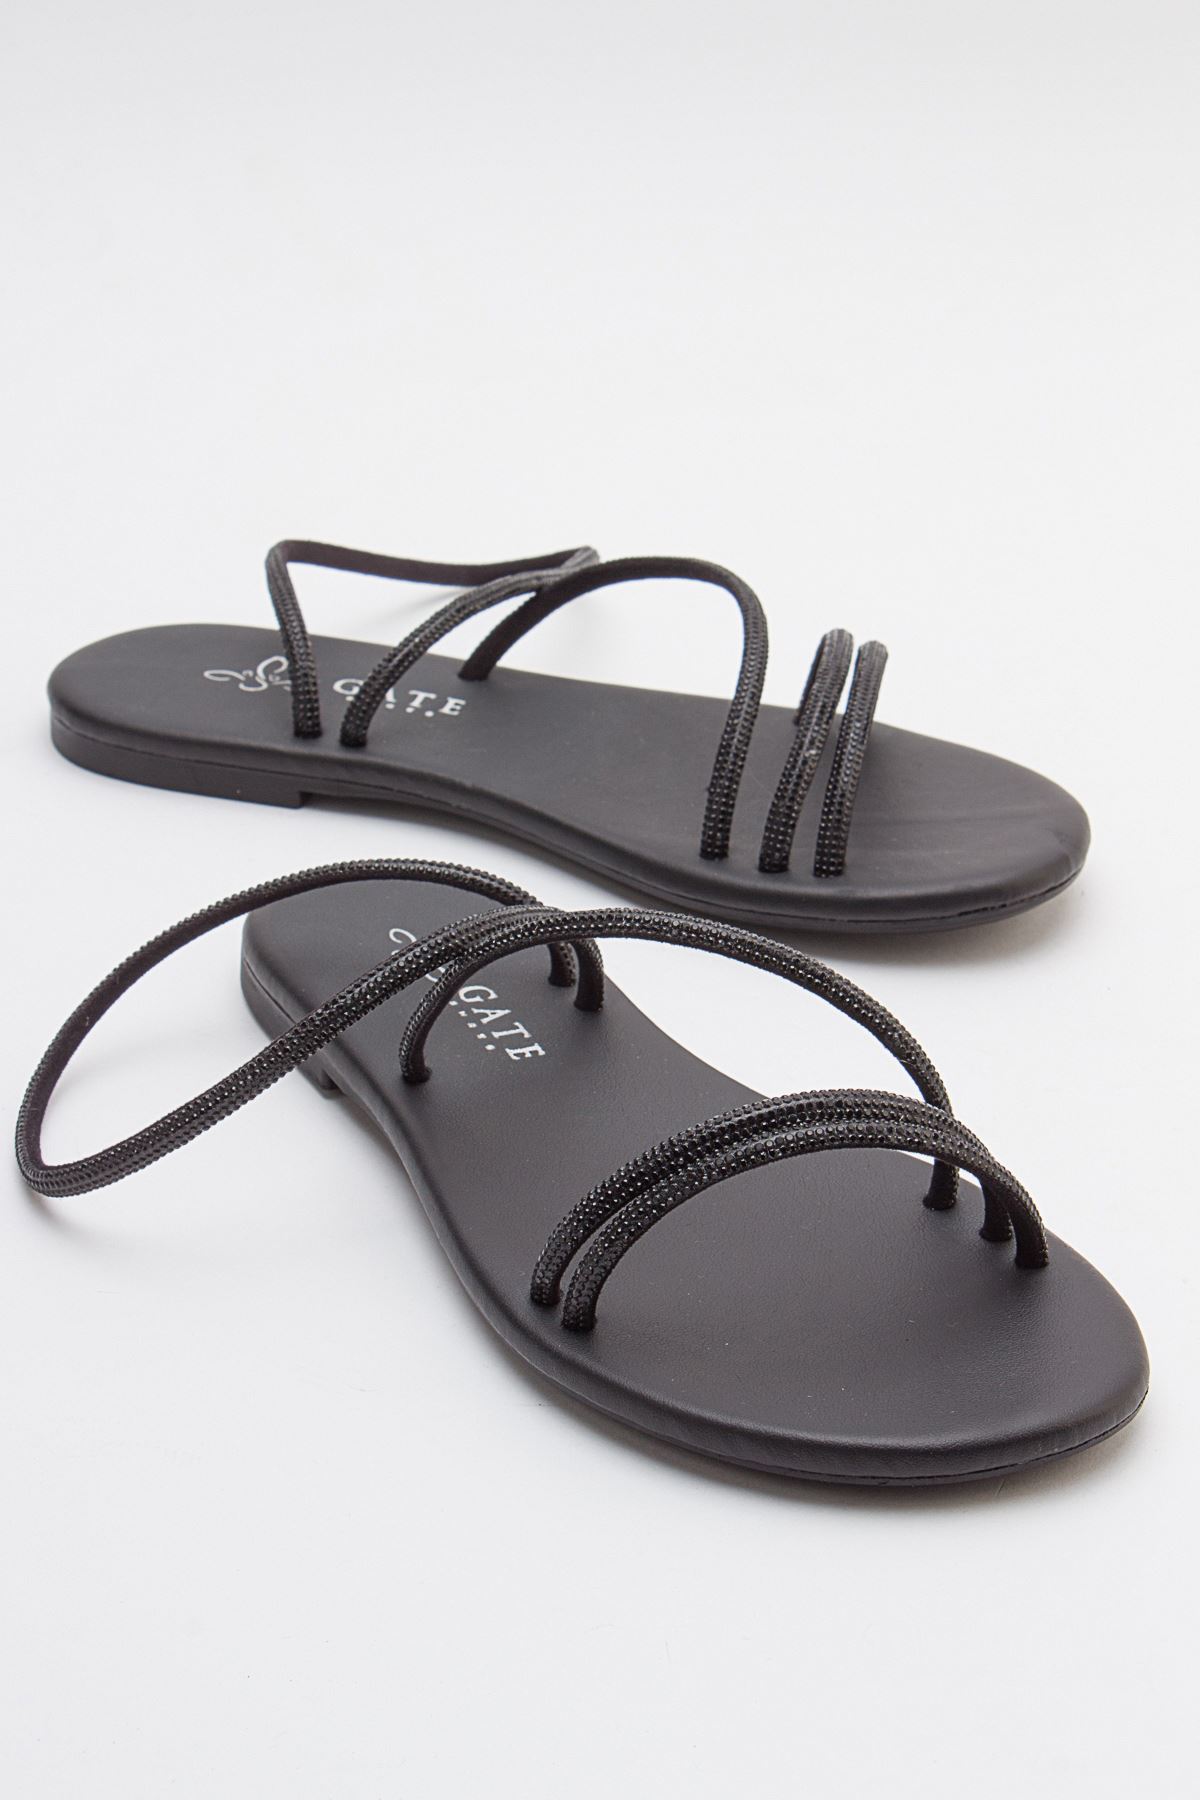 Breta Kristal Parlak Taşlı Alçak Tabanlı Kadın Sandalet Gate Shoes-Siyah